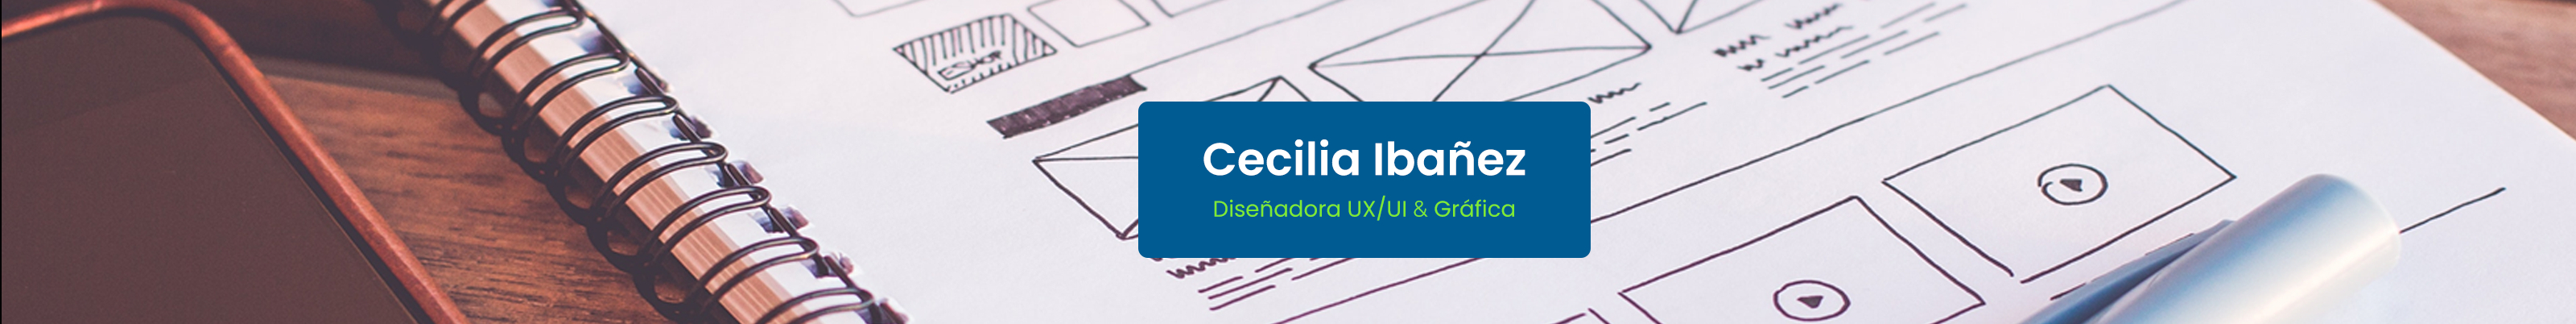 Banner profilu uživatele Cecilia Ibañez